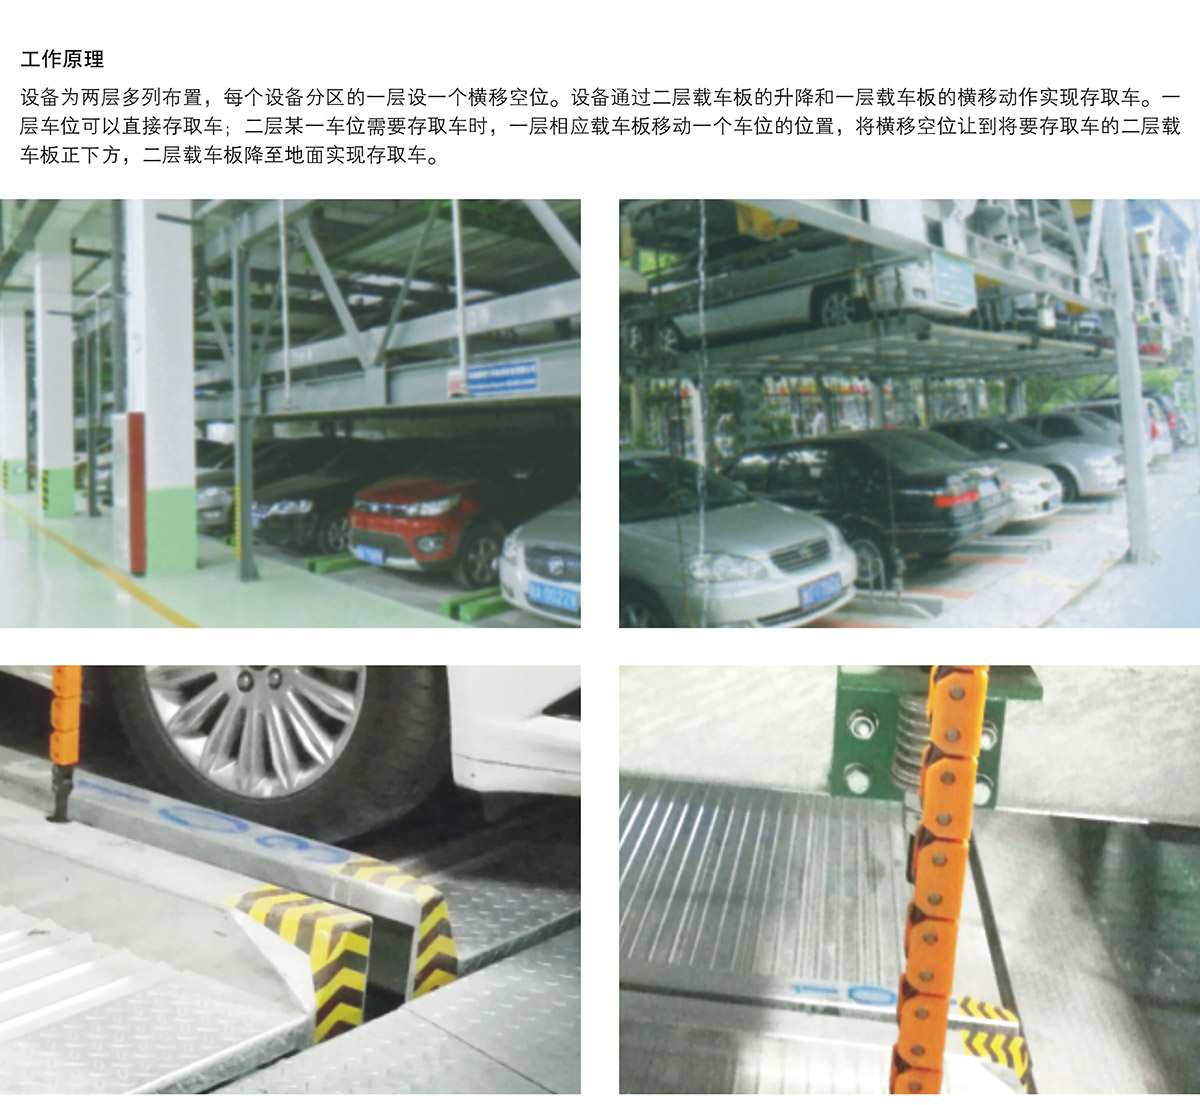 立体车位PSH2二层升降横移机械停车设备工作原理.jpg